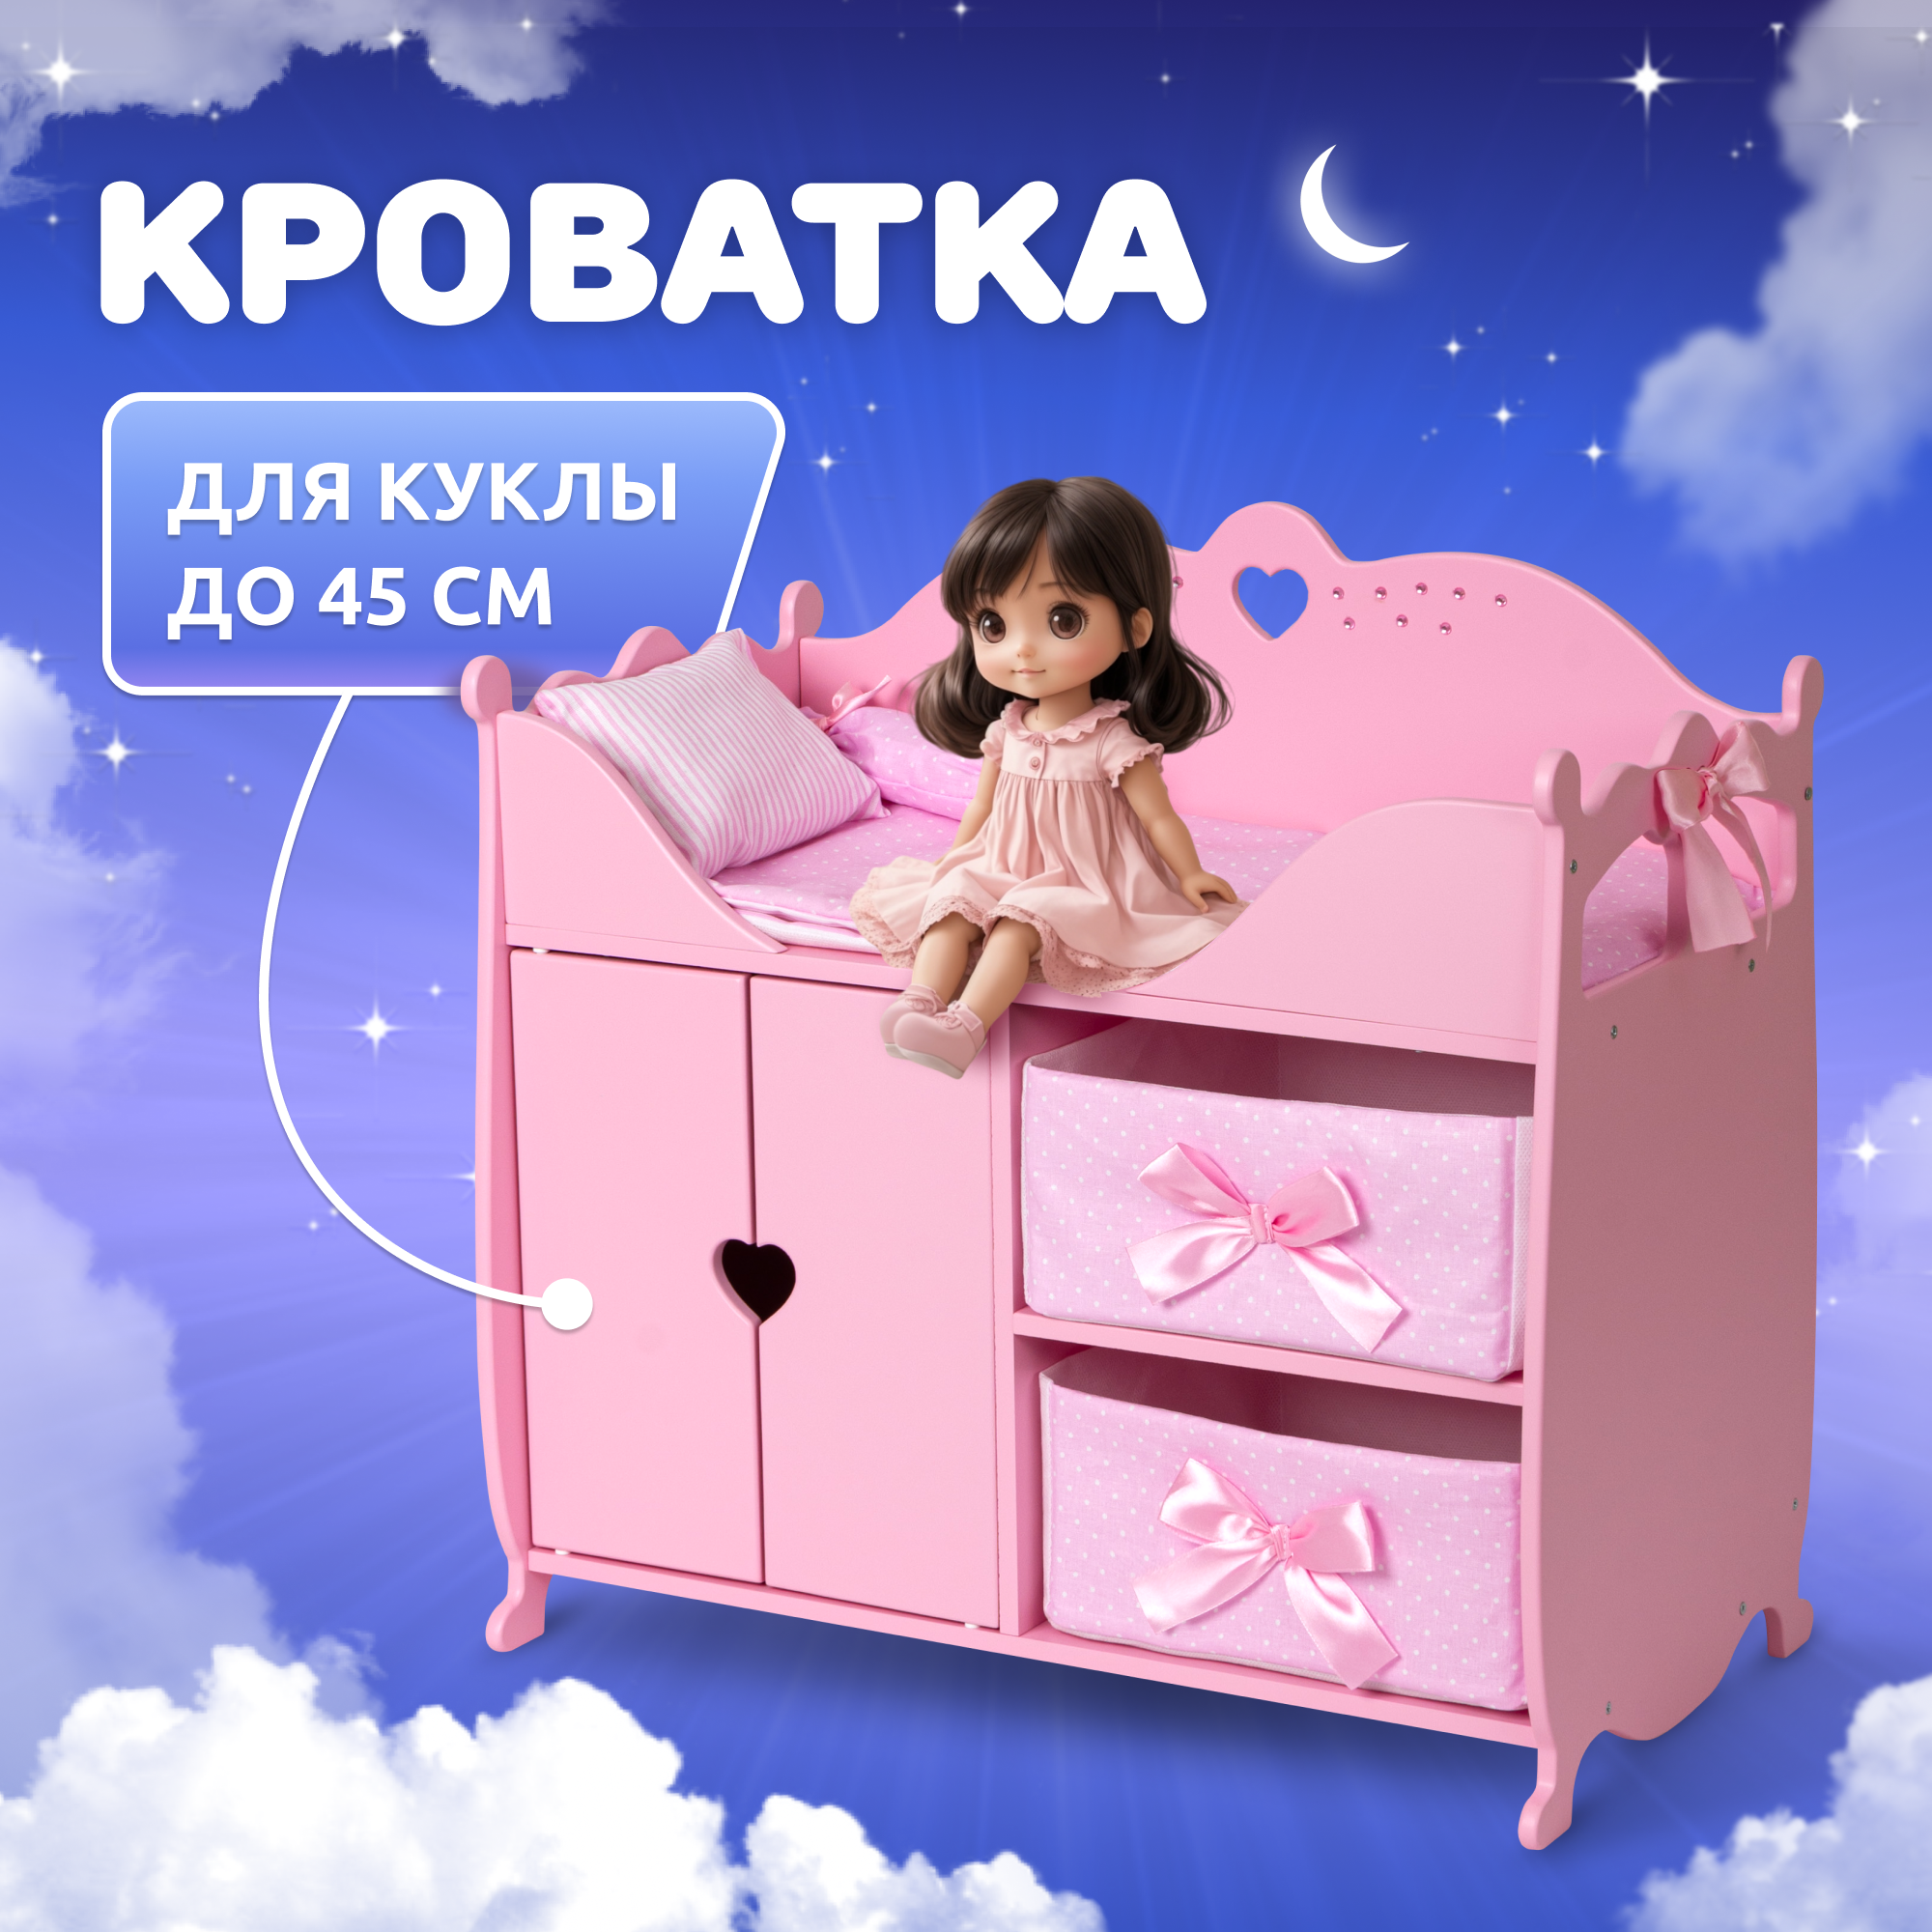 Мебель для кукол домик кроватка деревянная манюня / детские игрушки: пеленальный шкаф, кровать baby born